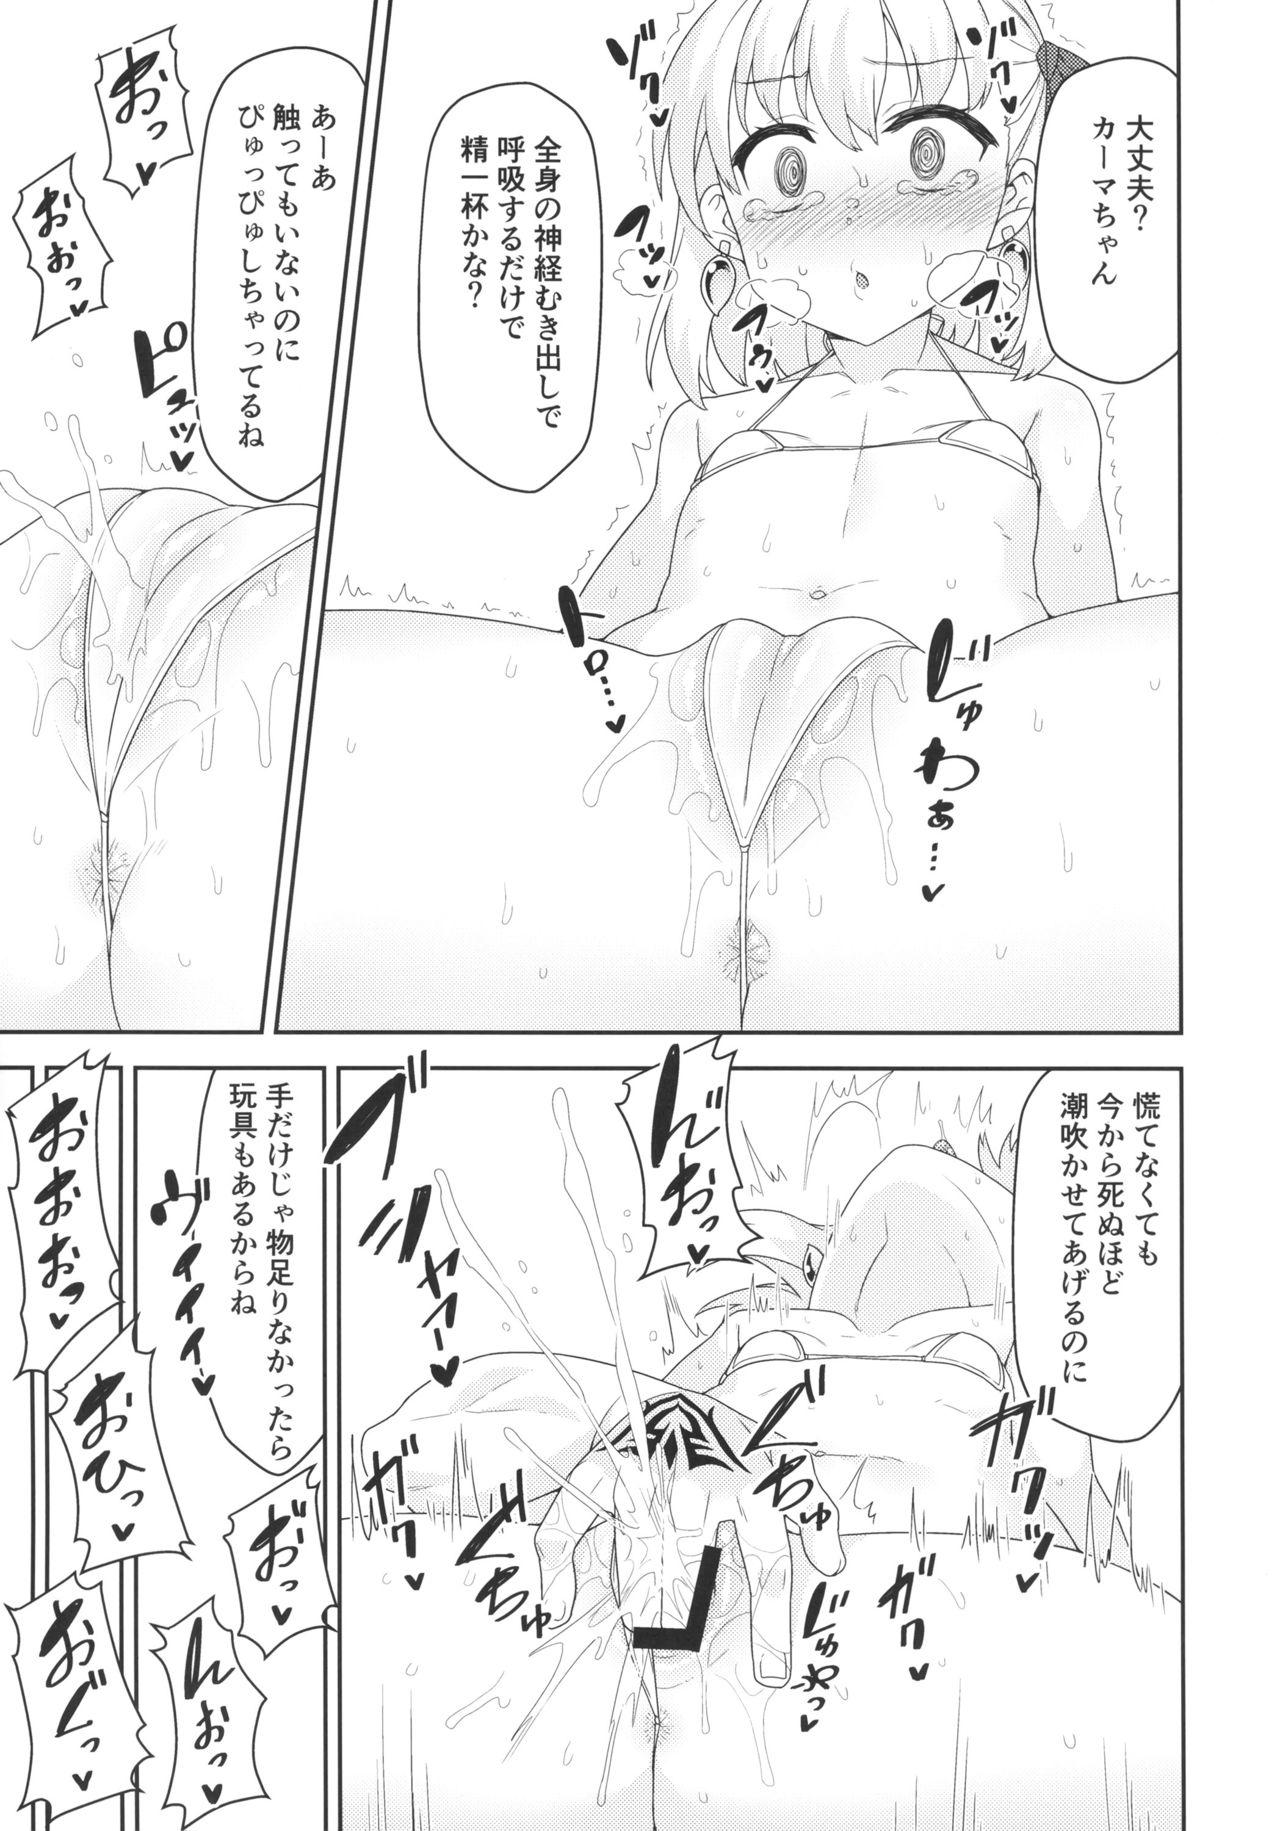 Nalgas Kama-chan wa Wakara Sarechaimashita - Fate grand order X - Page 8